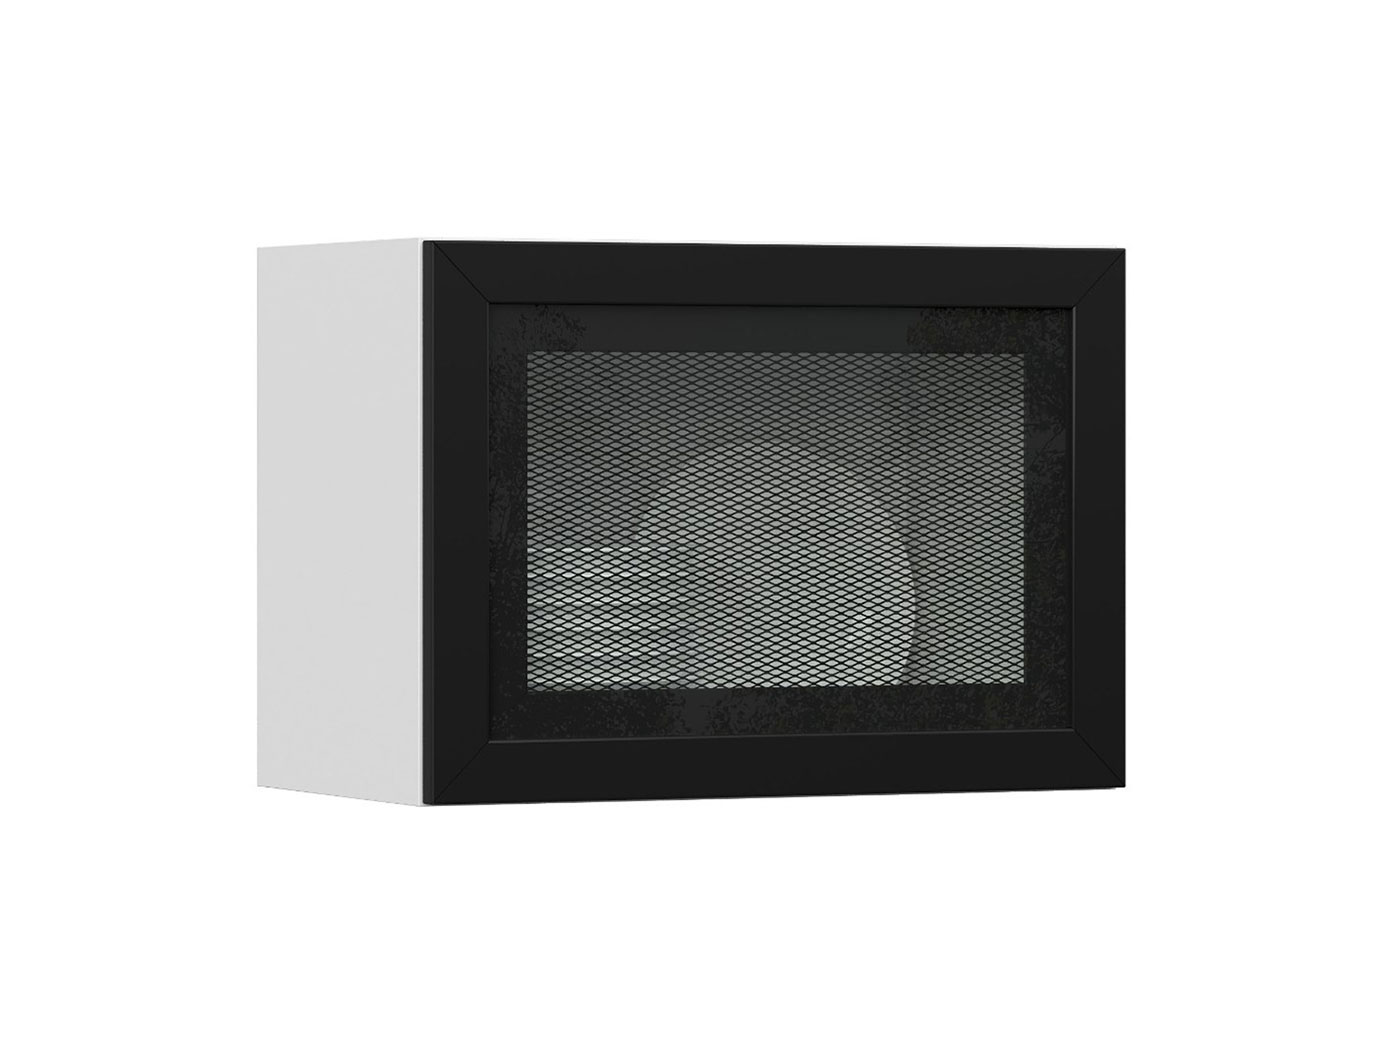 Навесной шкаф Шкаф навесной антресольный со стеклом Сетка в AL-рамке Универсальный фото 1